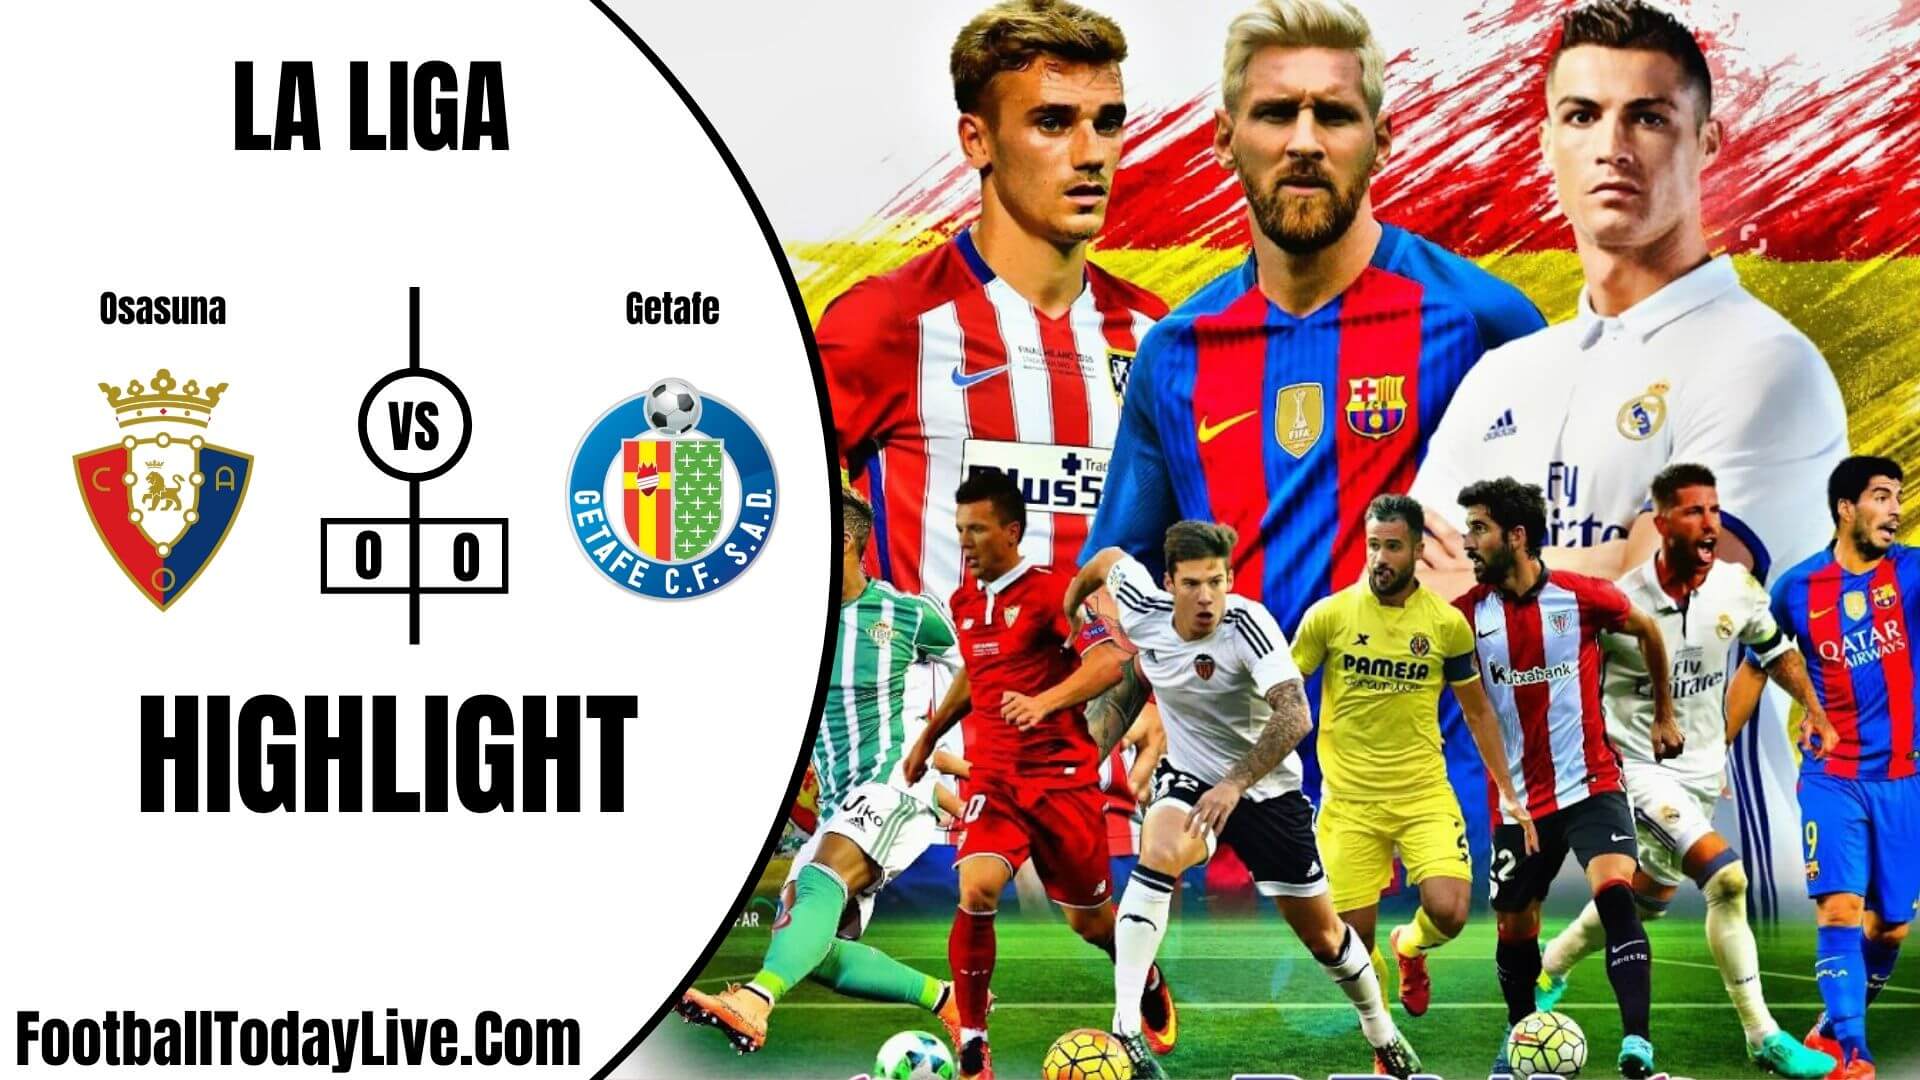 Osasuna Vs Getafe Highlights 2020 La Liga Week 34